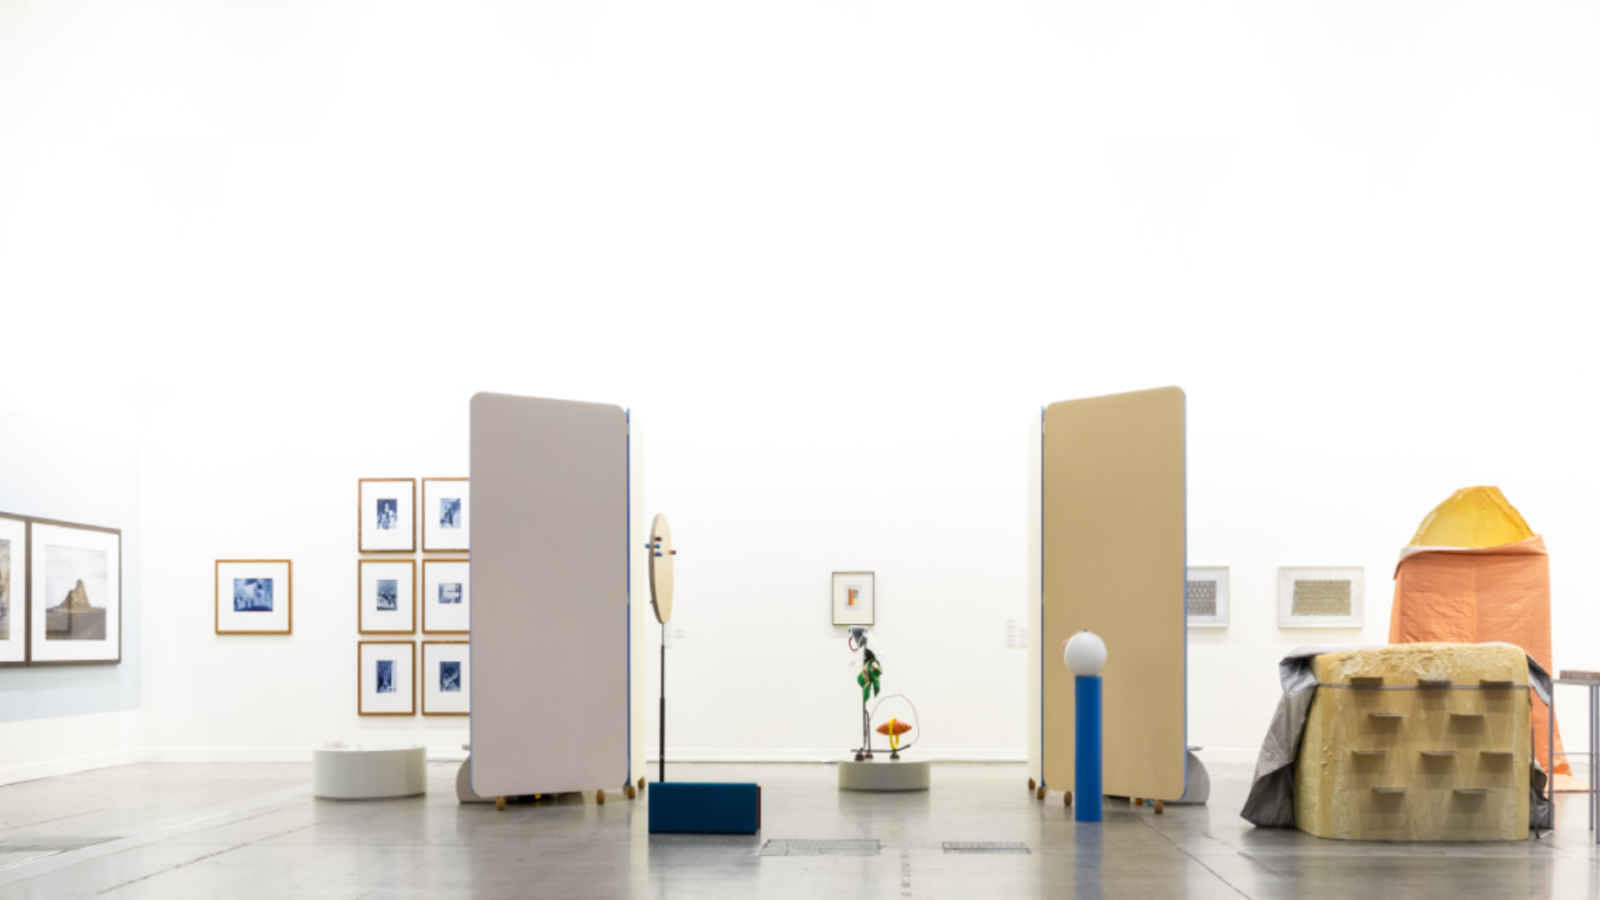 <h6><b>Jury 2019</b></h6>
<h6><b>Paula van den Bosch</b>, Art Historian and Senior Museum Curator, Bonnefantenmuseum, Maastricht<br />
<b>Sören Grammel</b>, Head of Art since 1960 / Contemporary Art, Kunstmuseum Basel<br />
<b>Francesco Stocchi</b>, Curator for Modern and Contemporary Art, Museum Boijmans Van Beuningen, Rotterdam<br />
The prize has been assigned to C L E A R I N G, Brussels - New York - Brooklyn and MAI 36, Zurich</h6>
